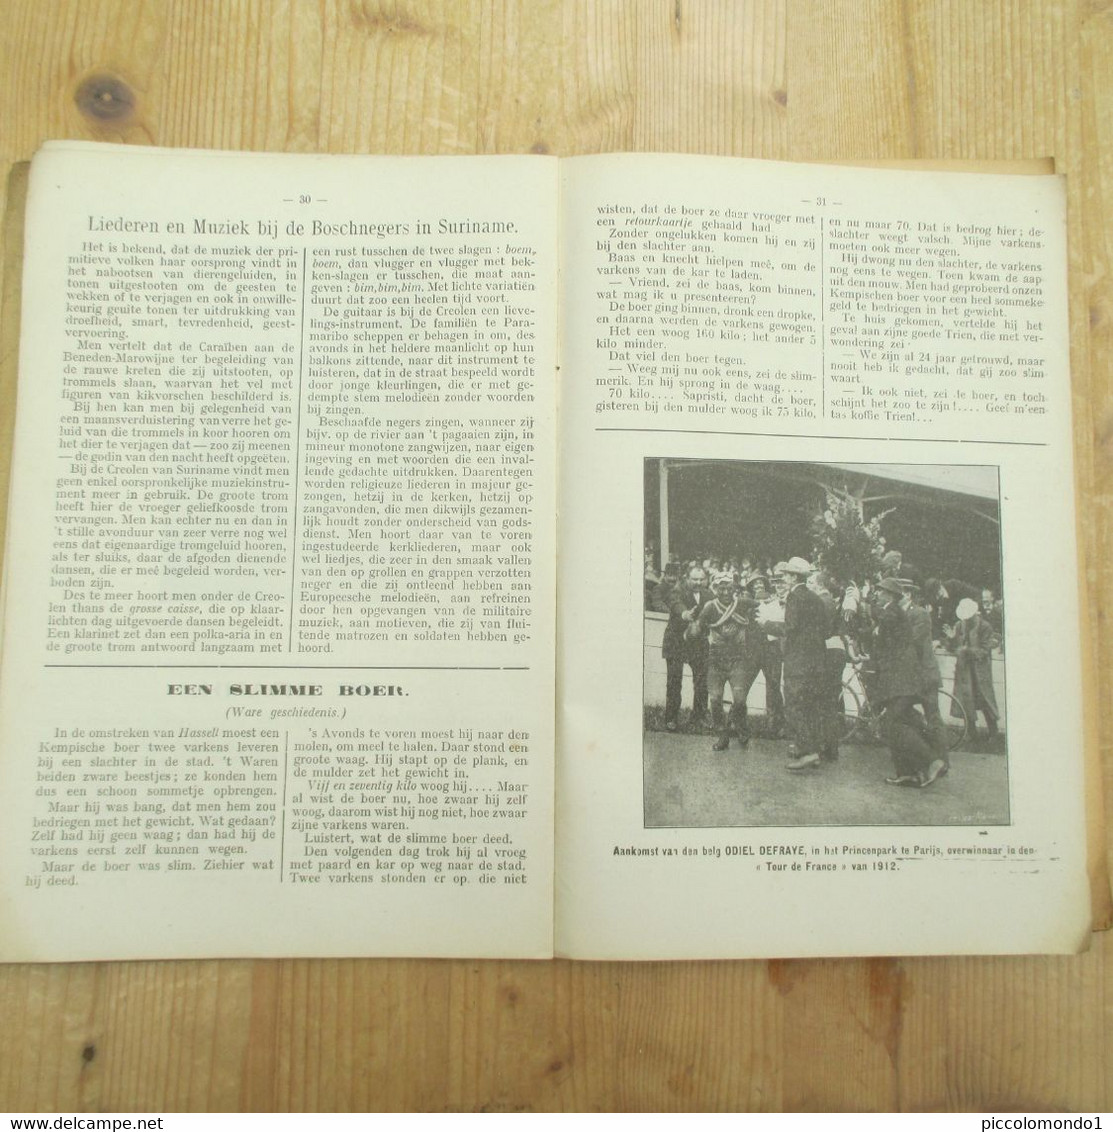 Gent Almanak Het Volk 1914 96 Blz - Anciens